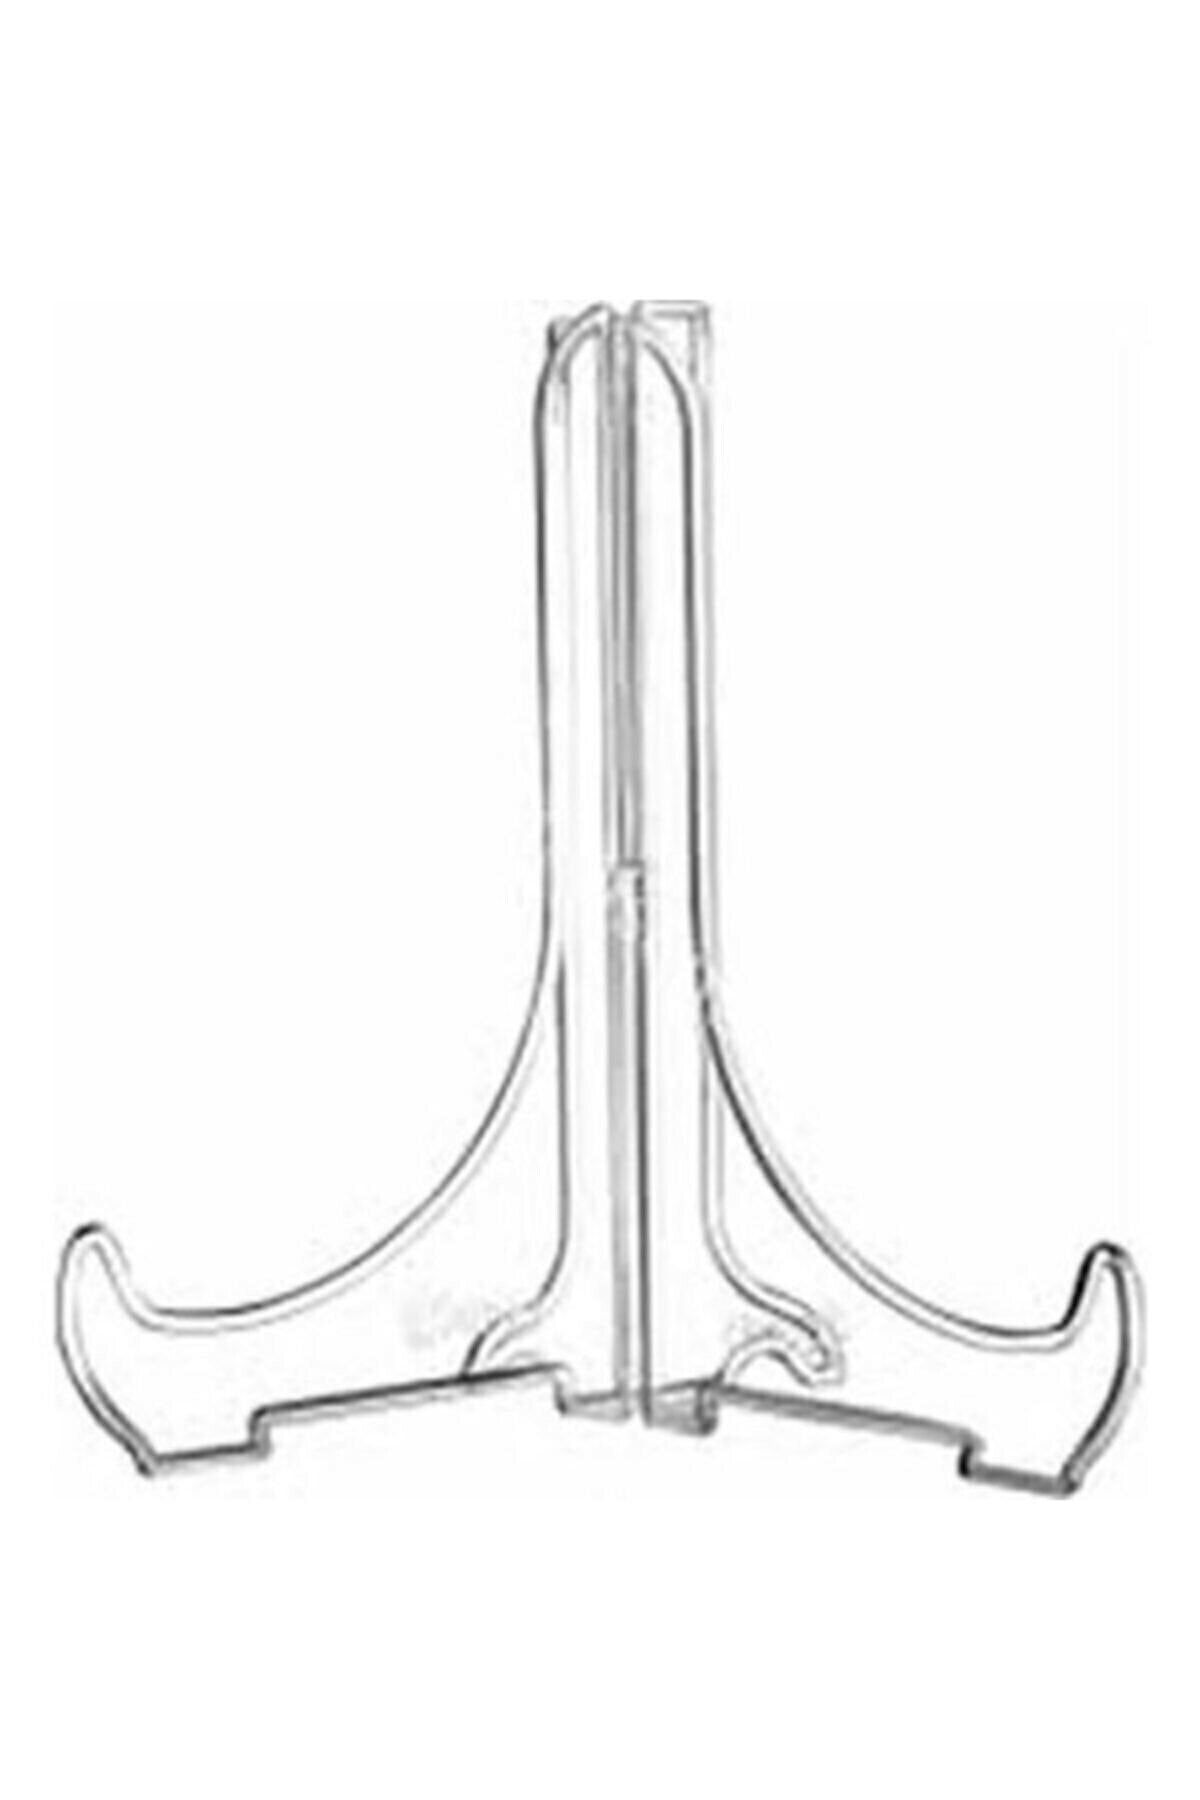 RoseRoi Geçmeli Teşhir Ayağı Stand Fotoğraf Tablo Çerçeve Ayağı Sunum Ayağı 10 X 12 Cm Ebat